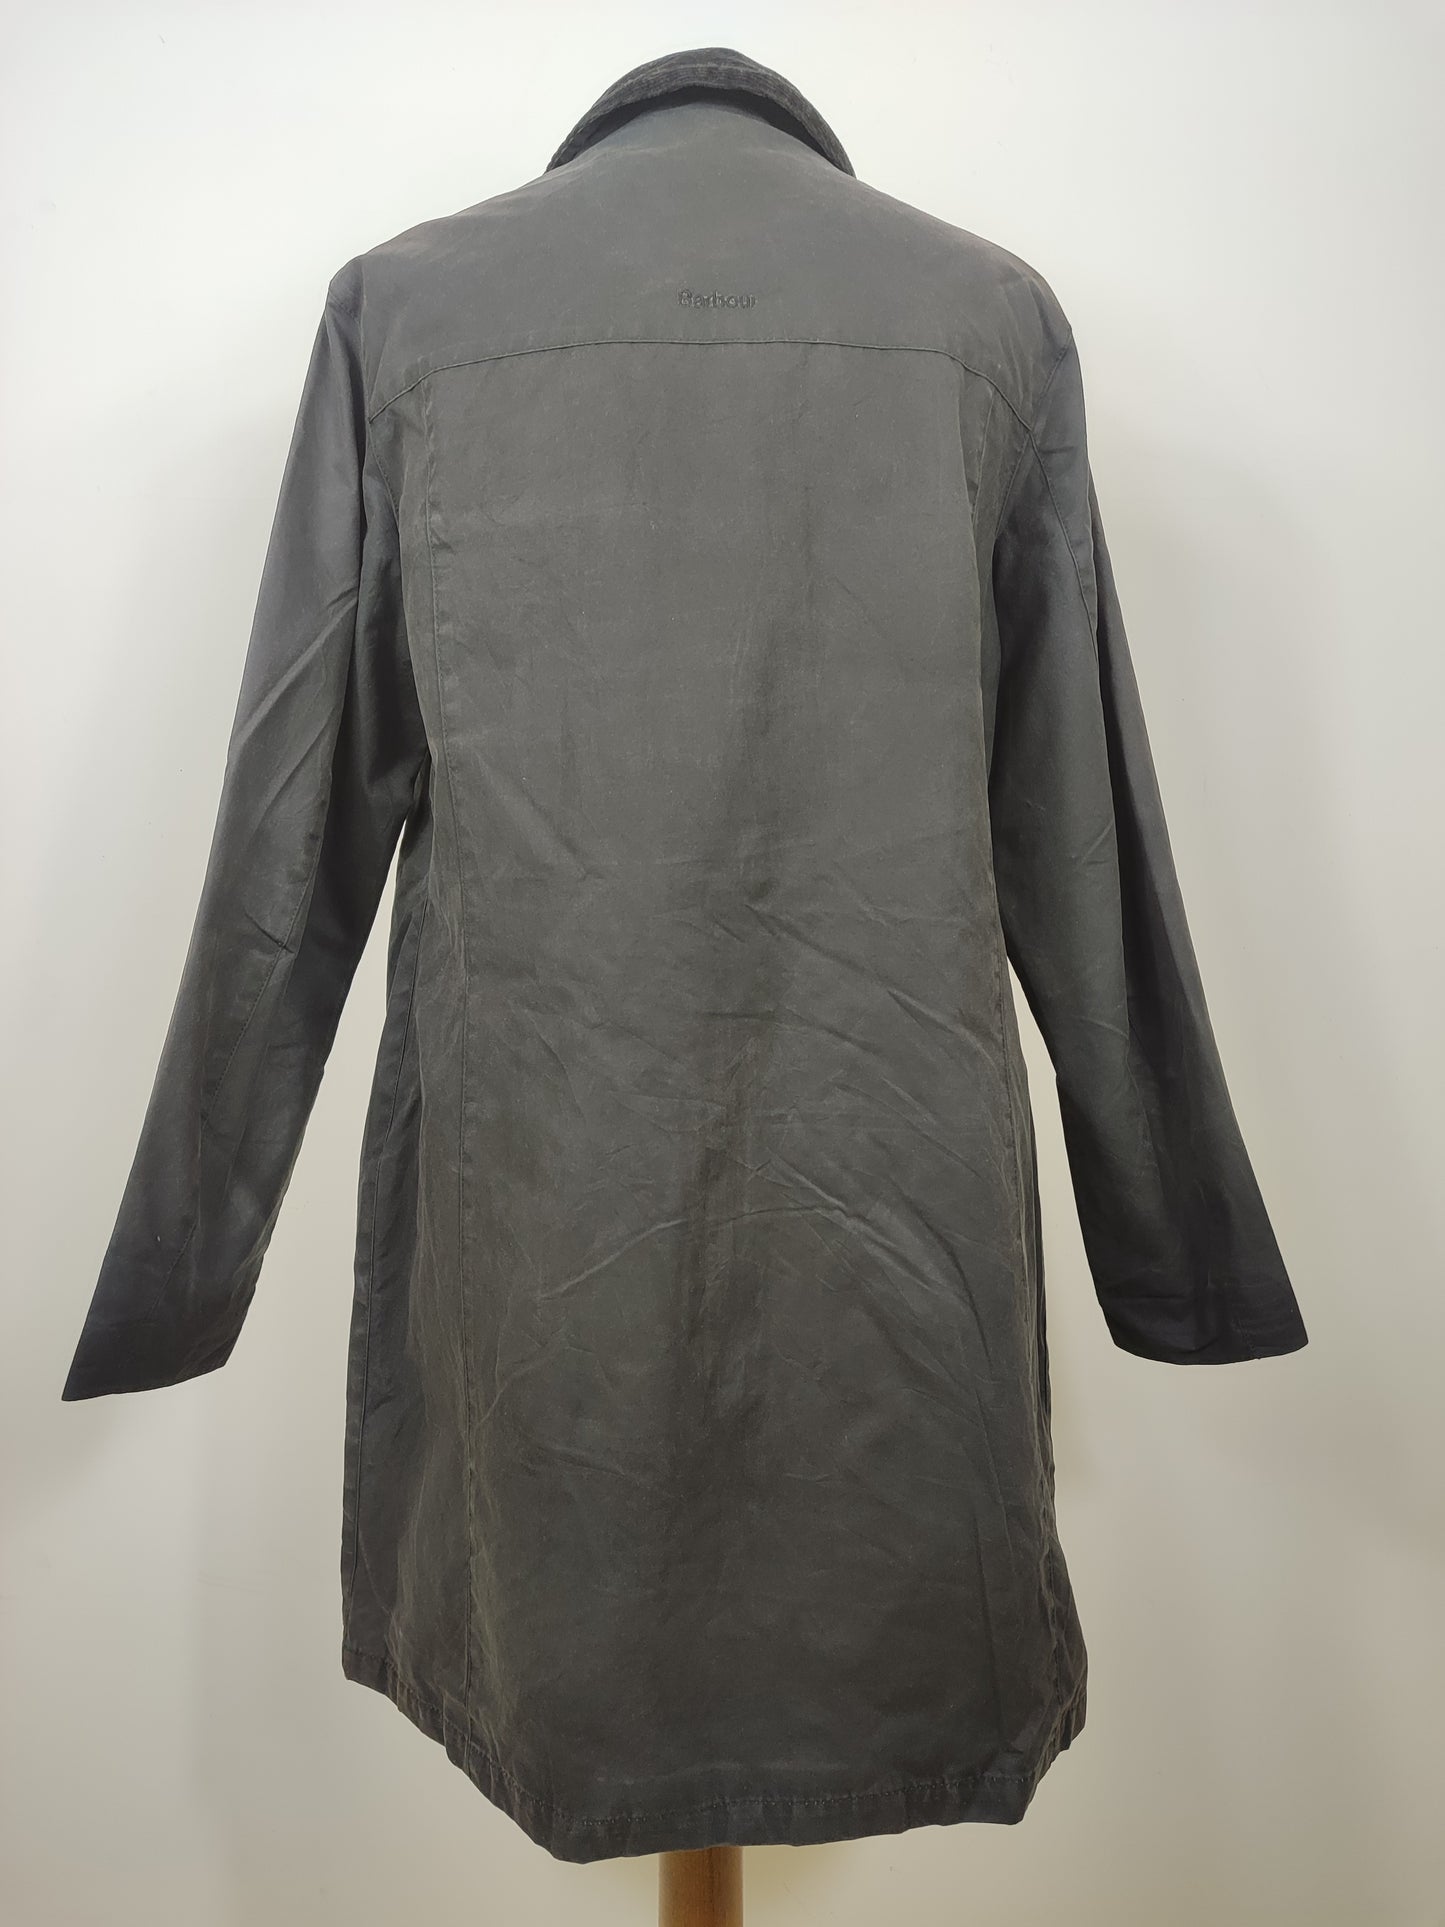 Giacca Barbour Nera da donna Medium Uk14 - Audrey Smoked Lady Coat black size uk14